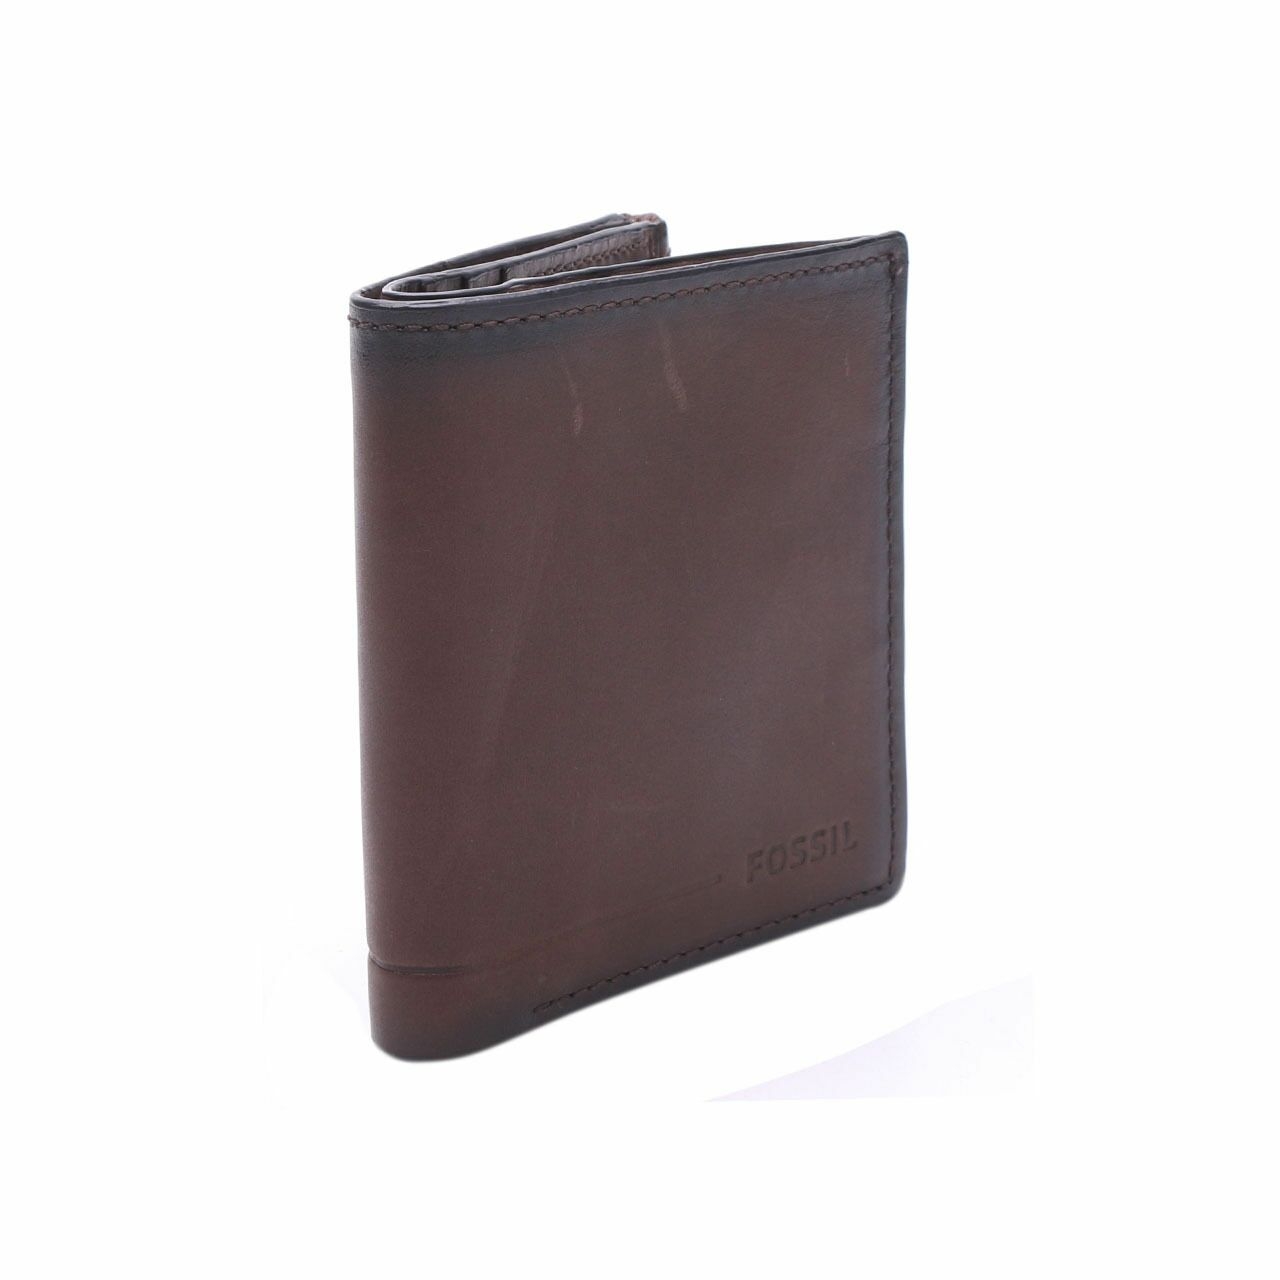 Fossil Allen Zip Bifold RFID Dark Brown Leather Wallet